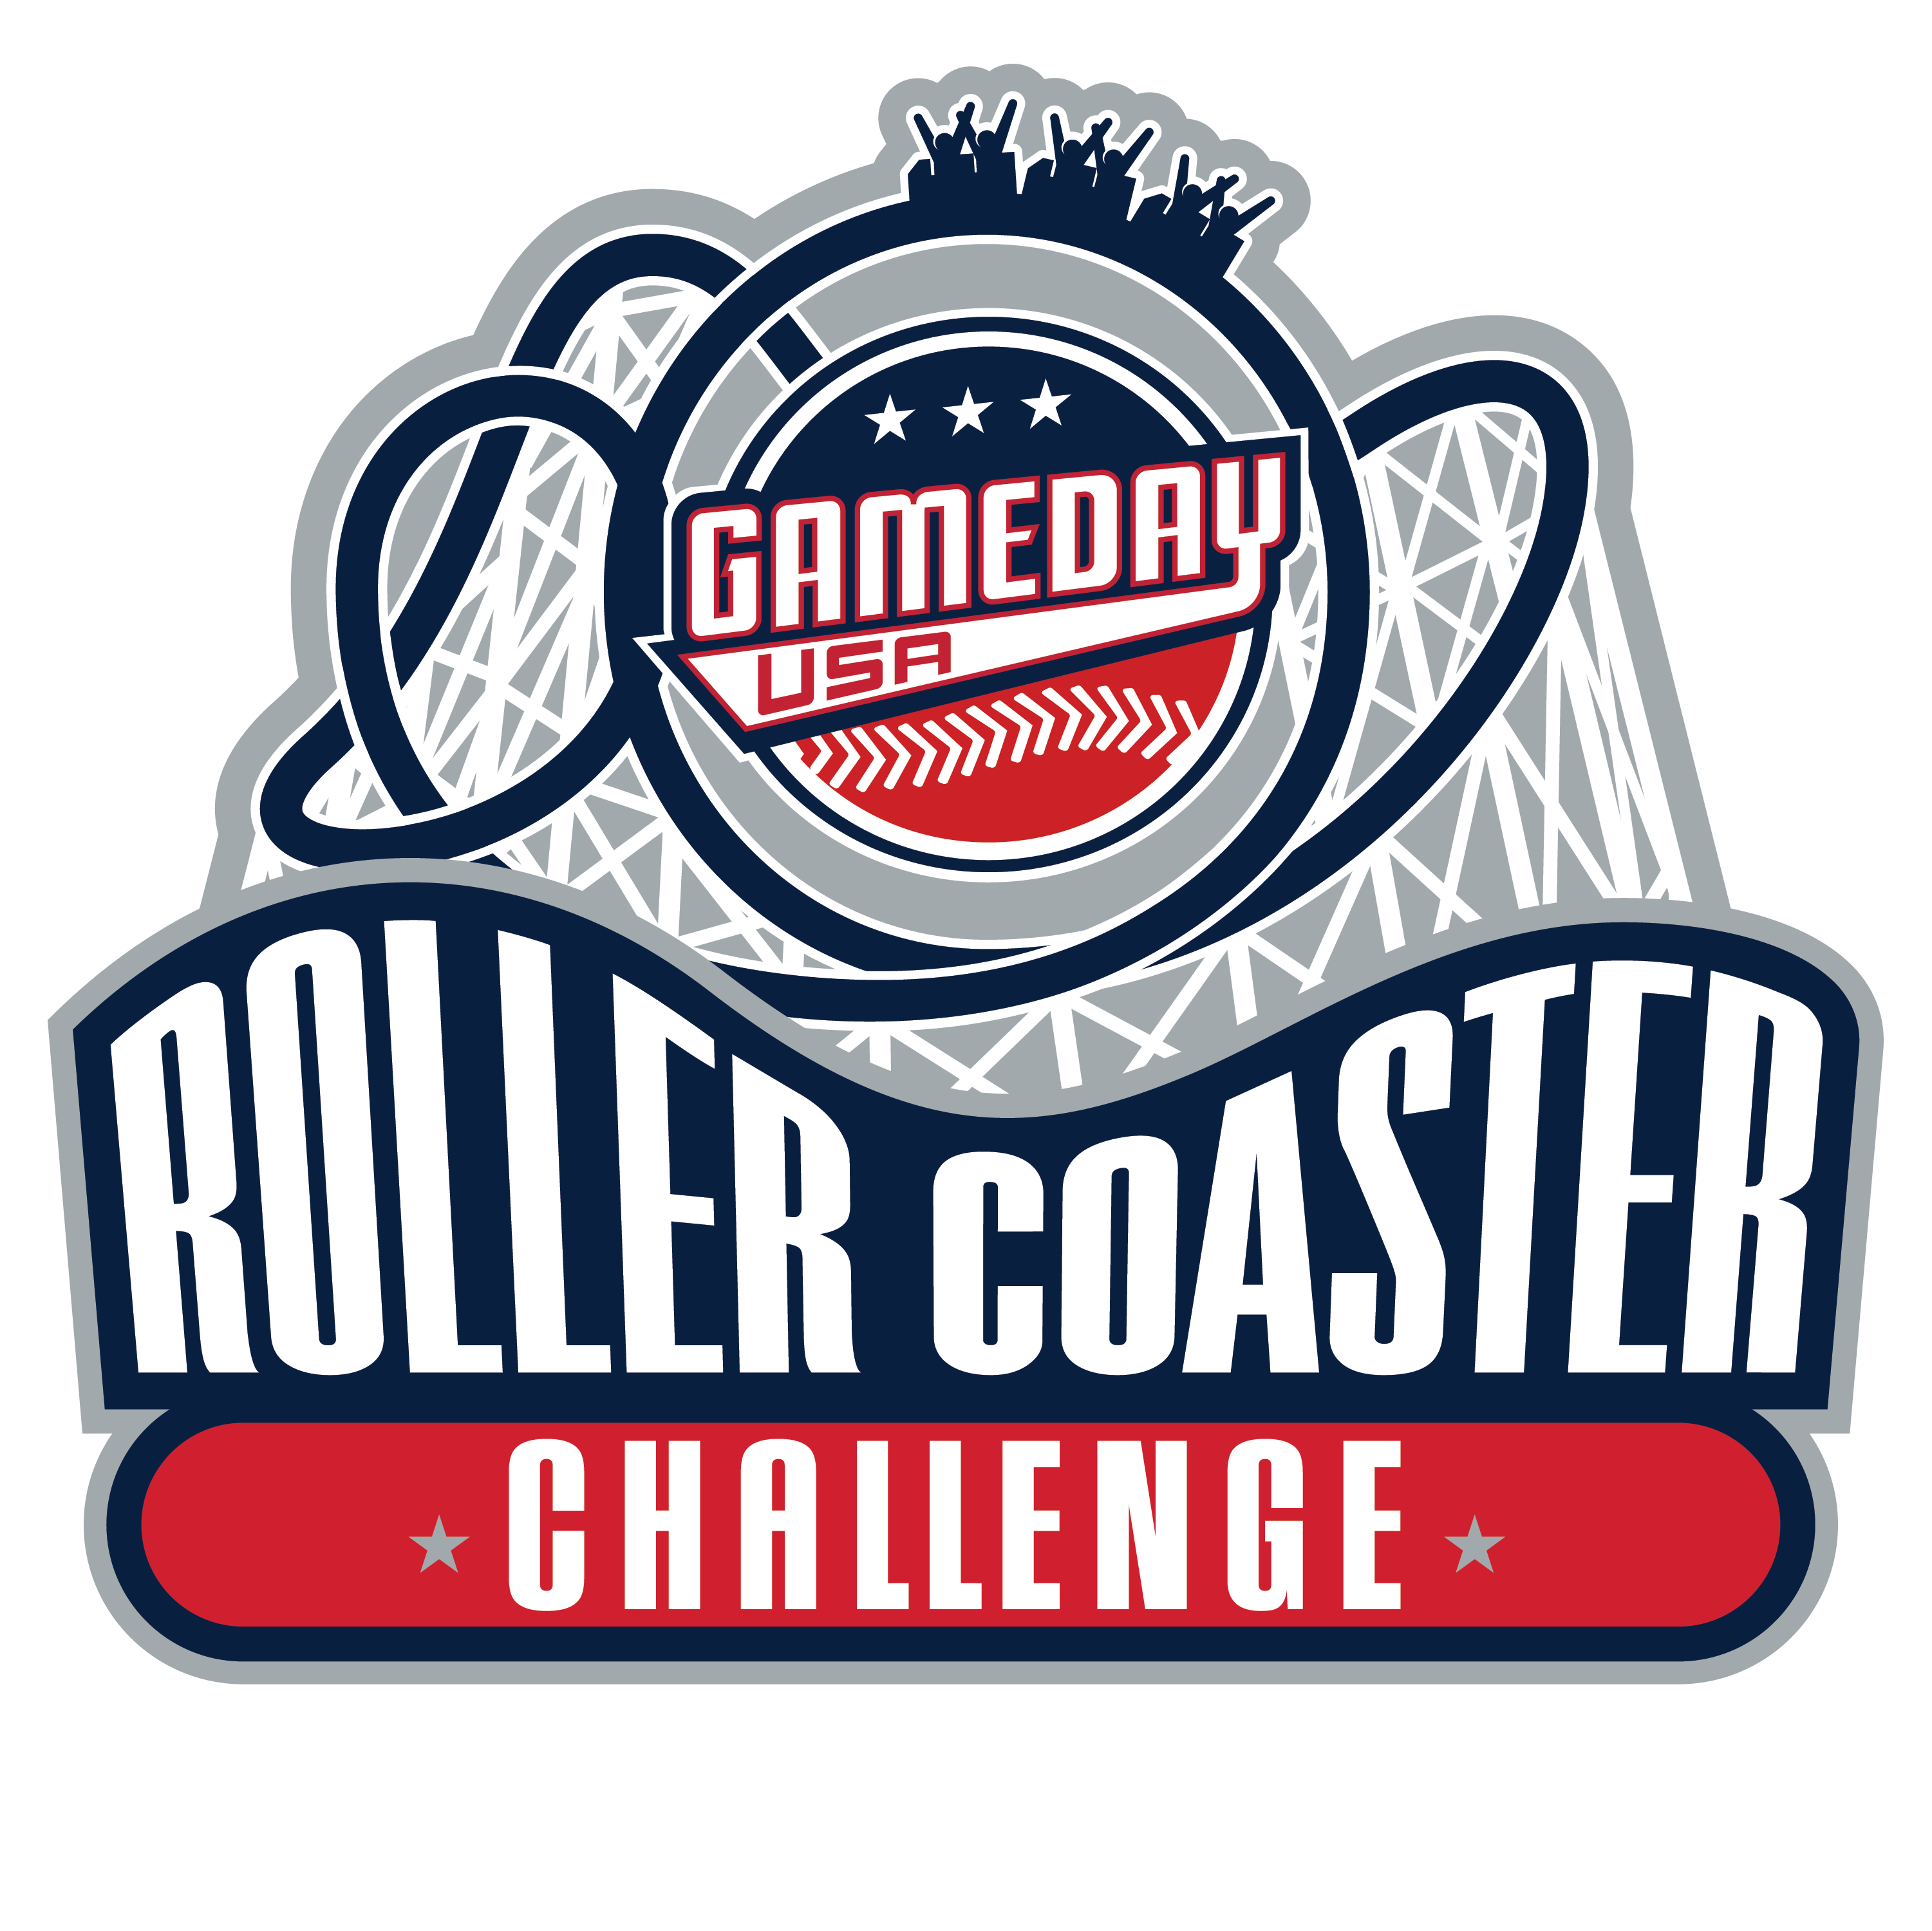 ROLLER COASTER CHALLENGE - WARREN COUNTY #2